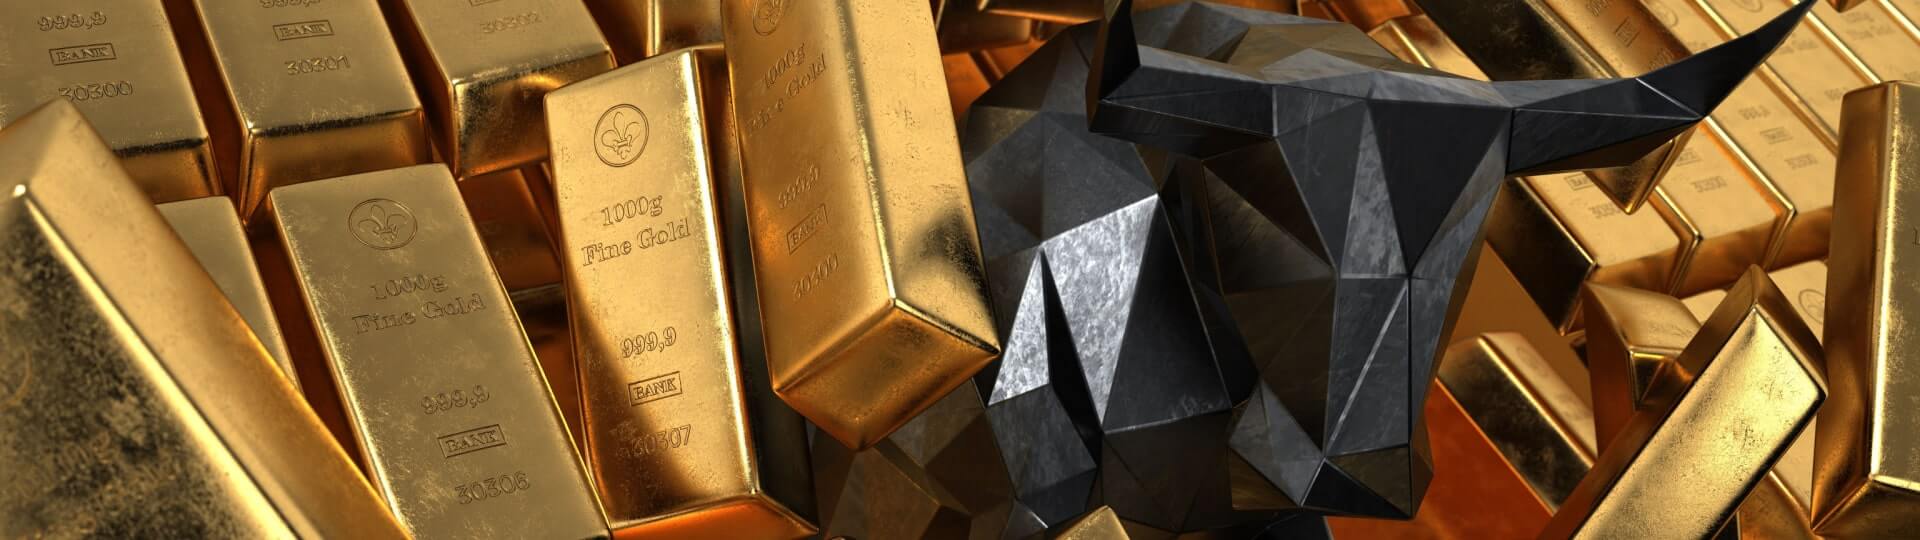 Cena zlata vzrostla téměř o pětinu za 3 měsíce